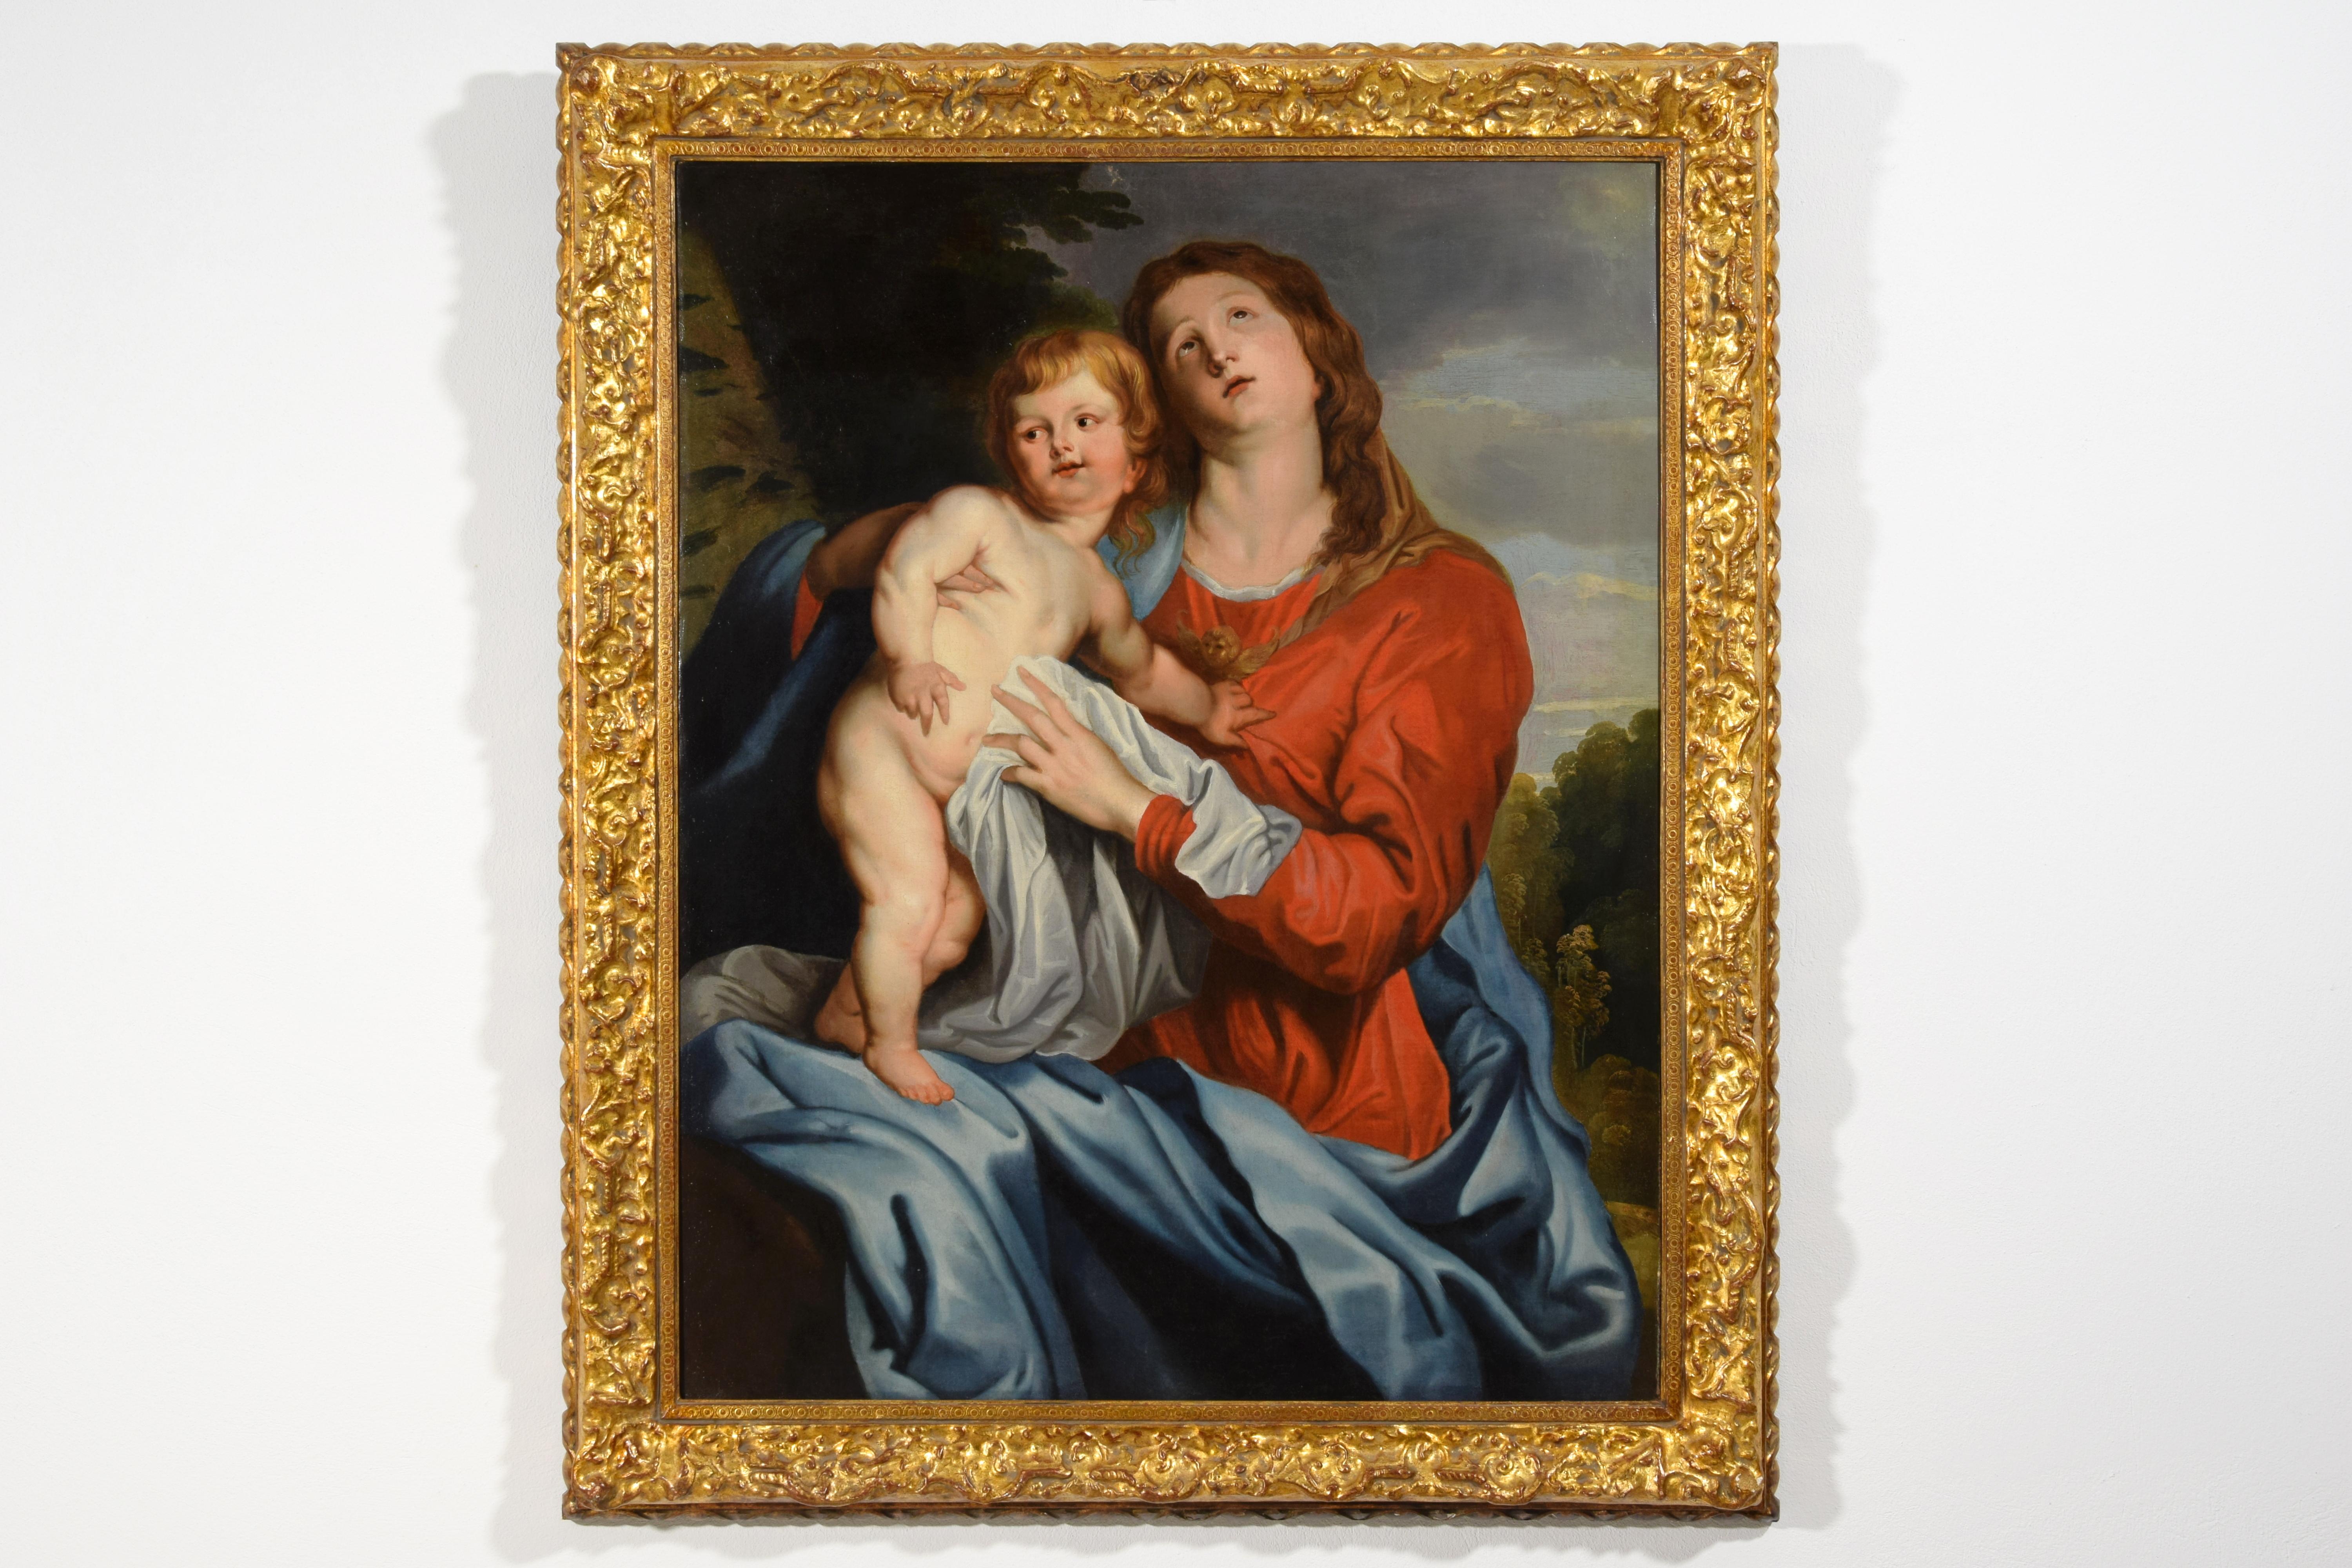 XVIIe siècle, peinture italienne avec une vierge et un enfant par un suiveur de Sir Anthony van Dyck

cm L 90 x H 113 ; corniche cm L 111 x H 135 x P 7
La toile représente la Madone avec l'Enfant sur ses genoux et est stylistiquement attribuable à